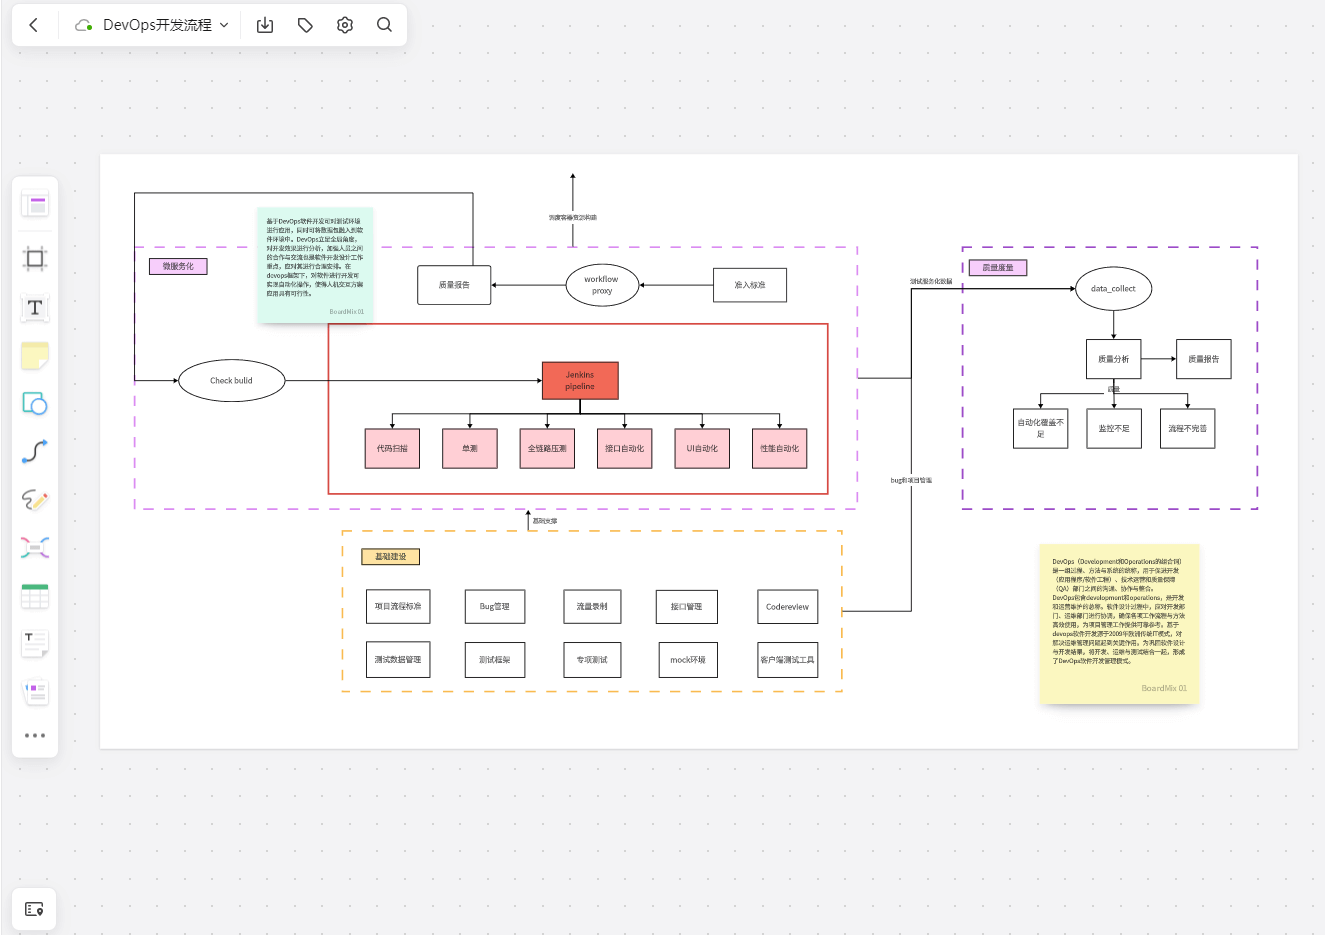 DevOps开发流程树状图